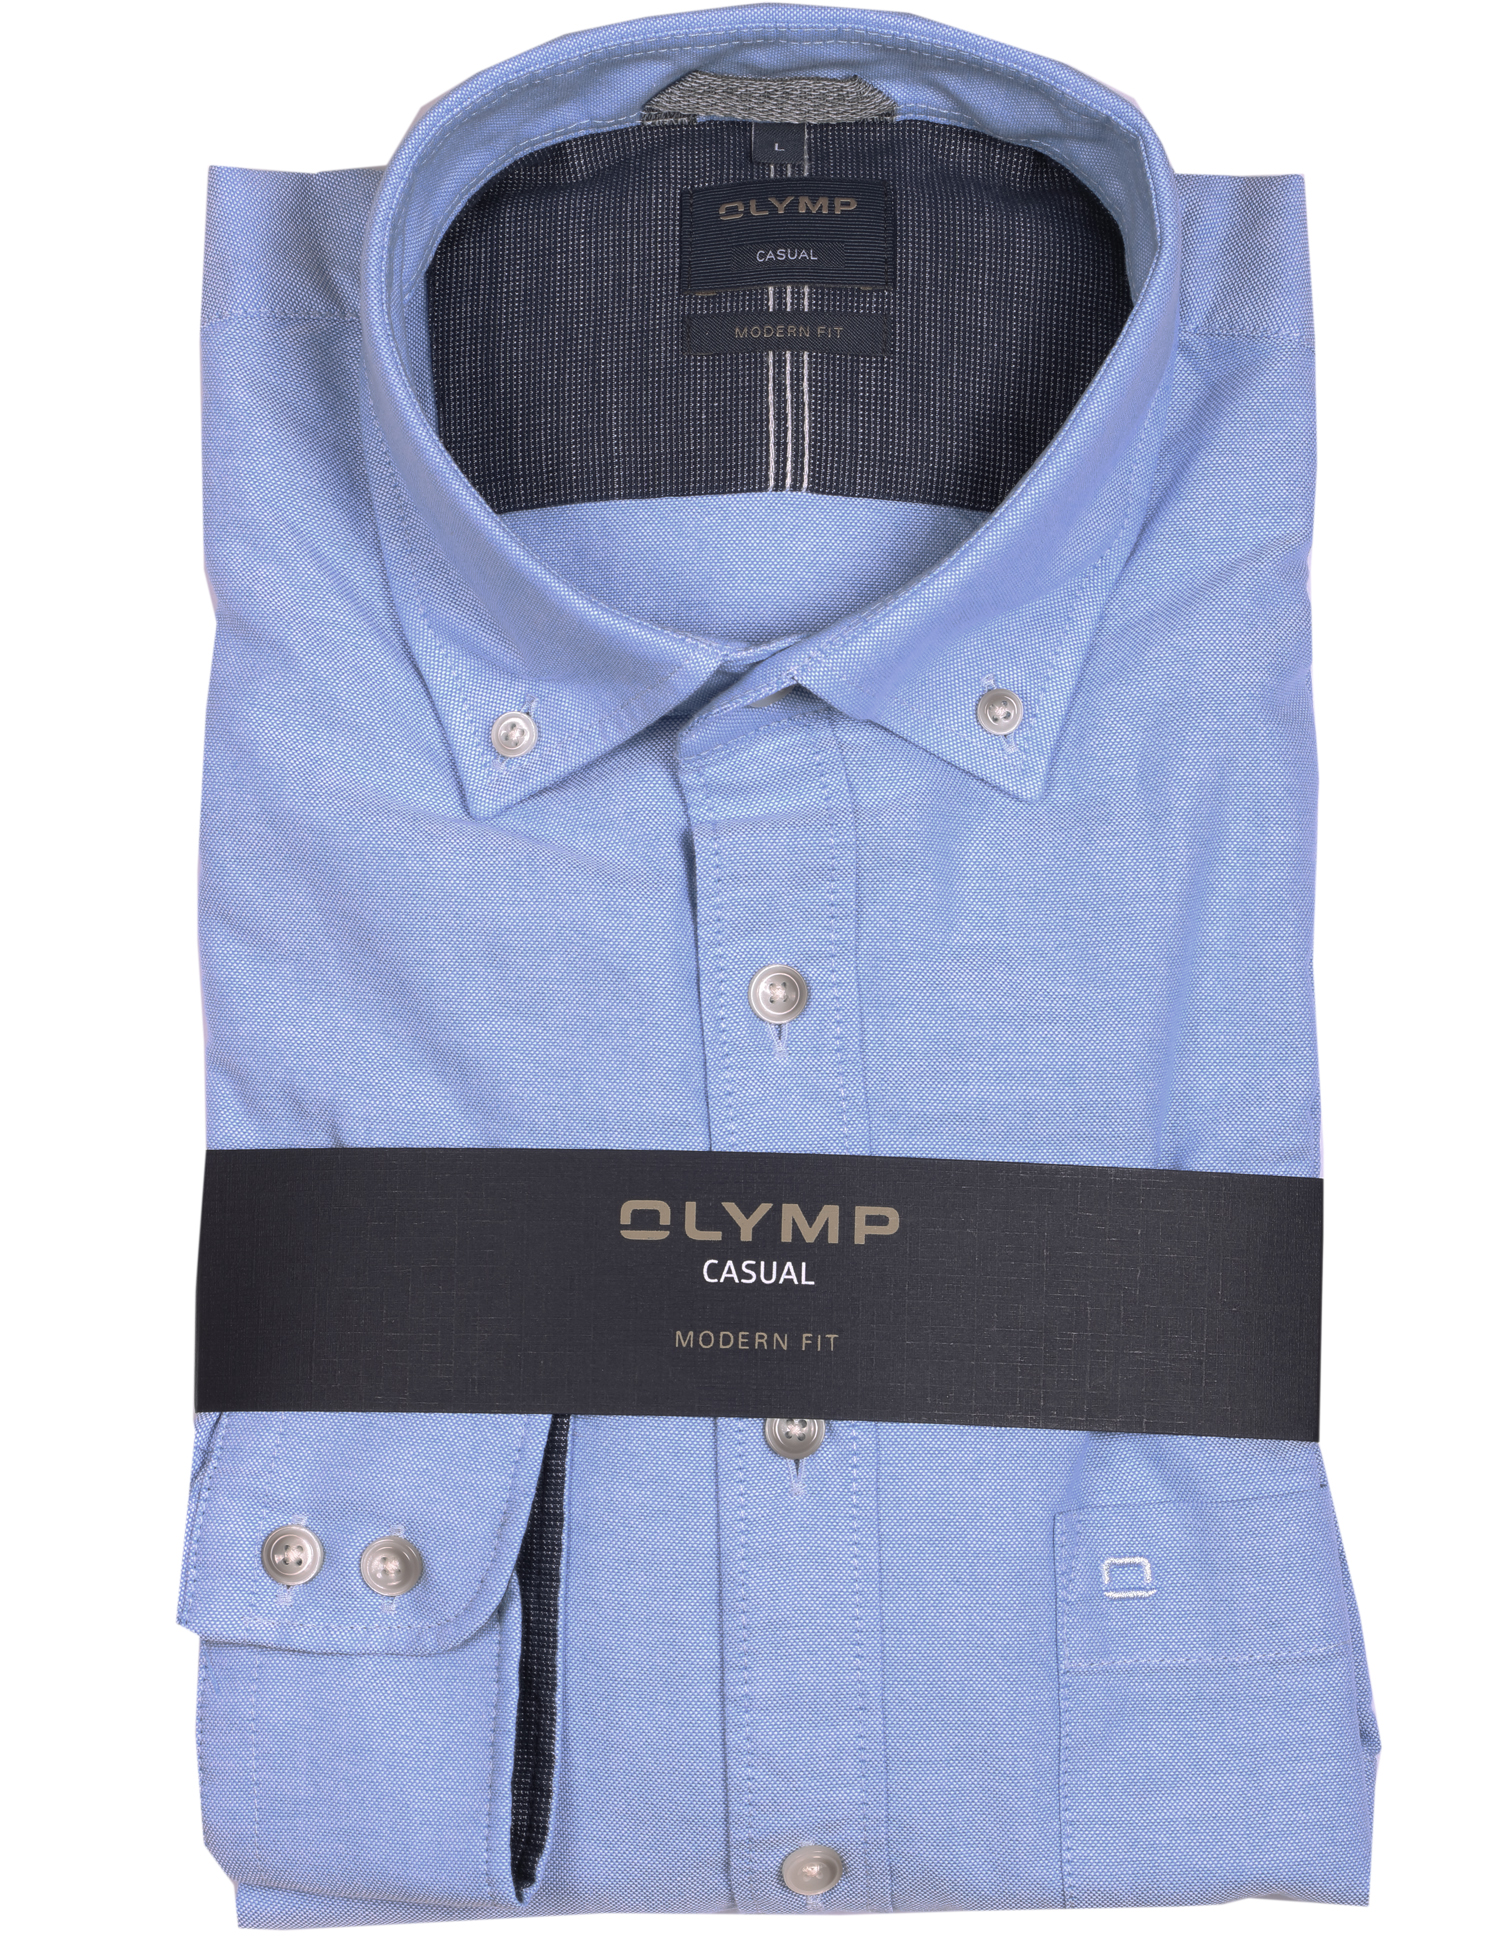 Olymp Hemd Casual modern fit Oxford - blau M